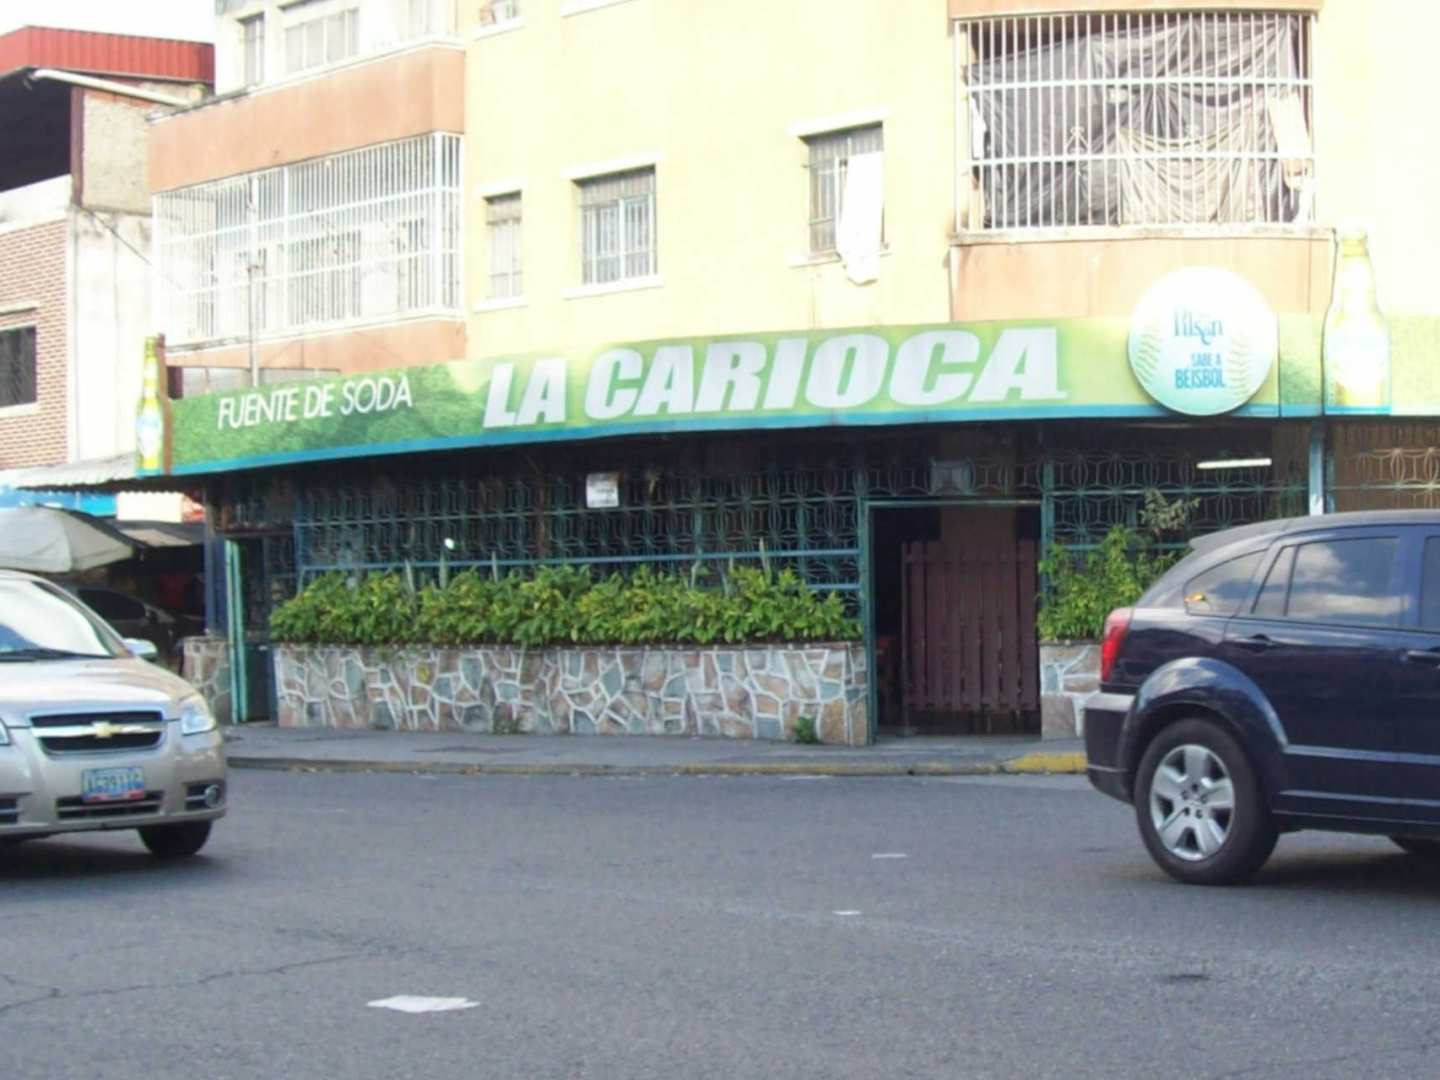 La Carioca